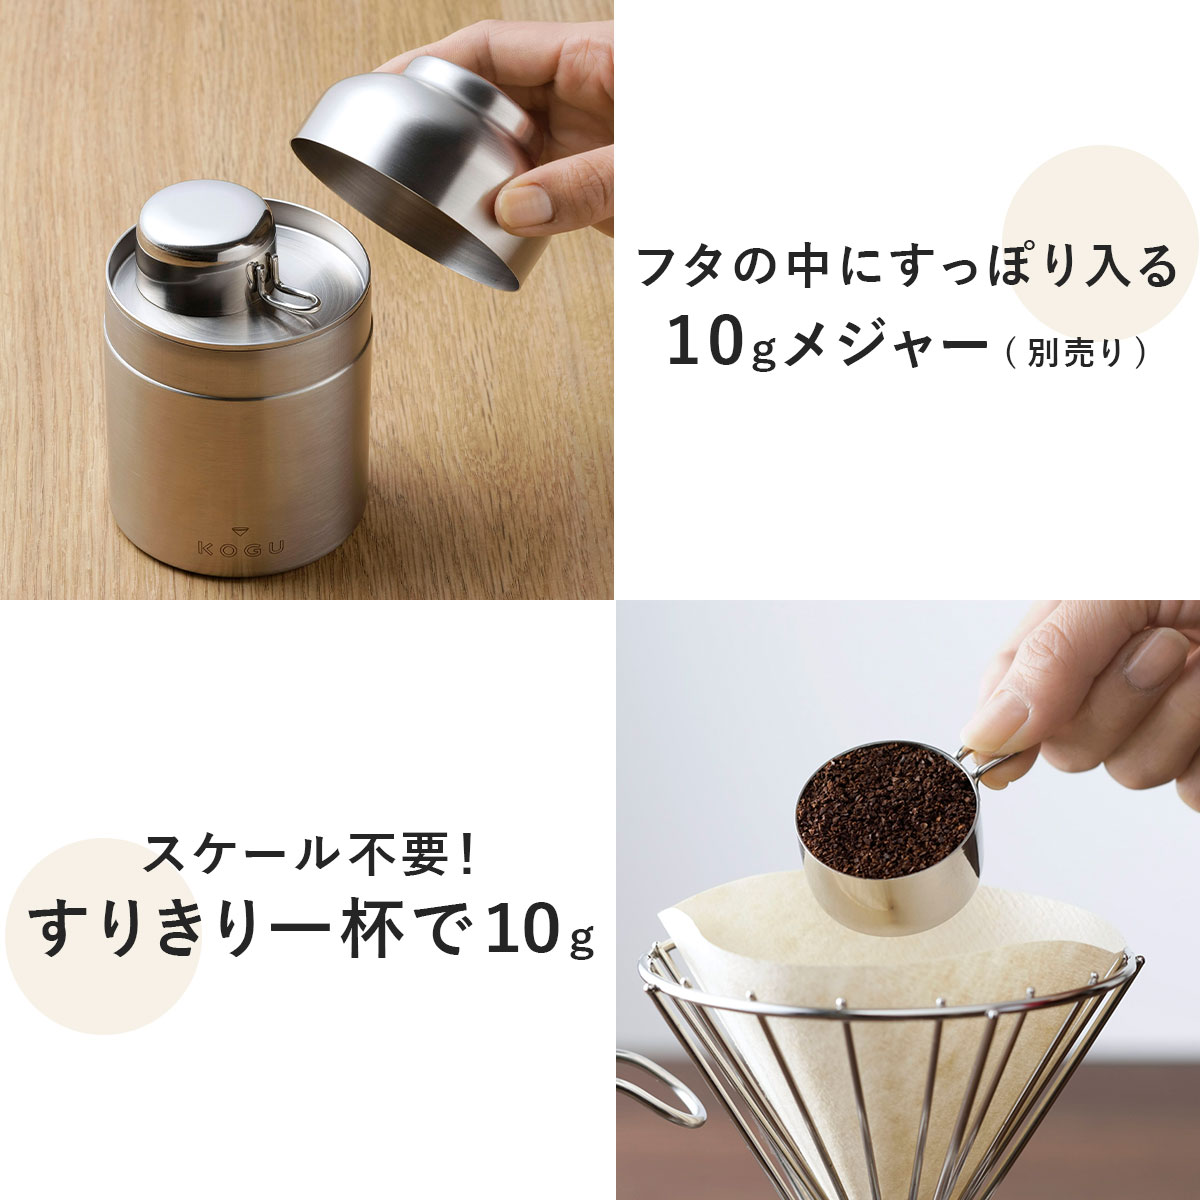 新作送料無料 珈琲考具 KOGU 下村企販 コーヒーメジャー 10g 日本製 ステンレス 食洗機対応 コーヒー豆 粉 計量 コンパクト キャニスターに入る 